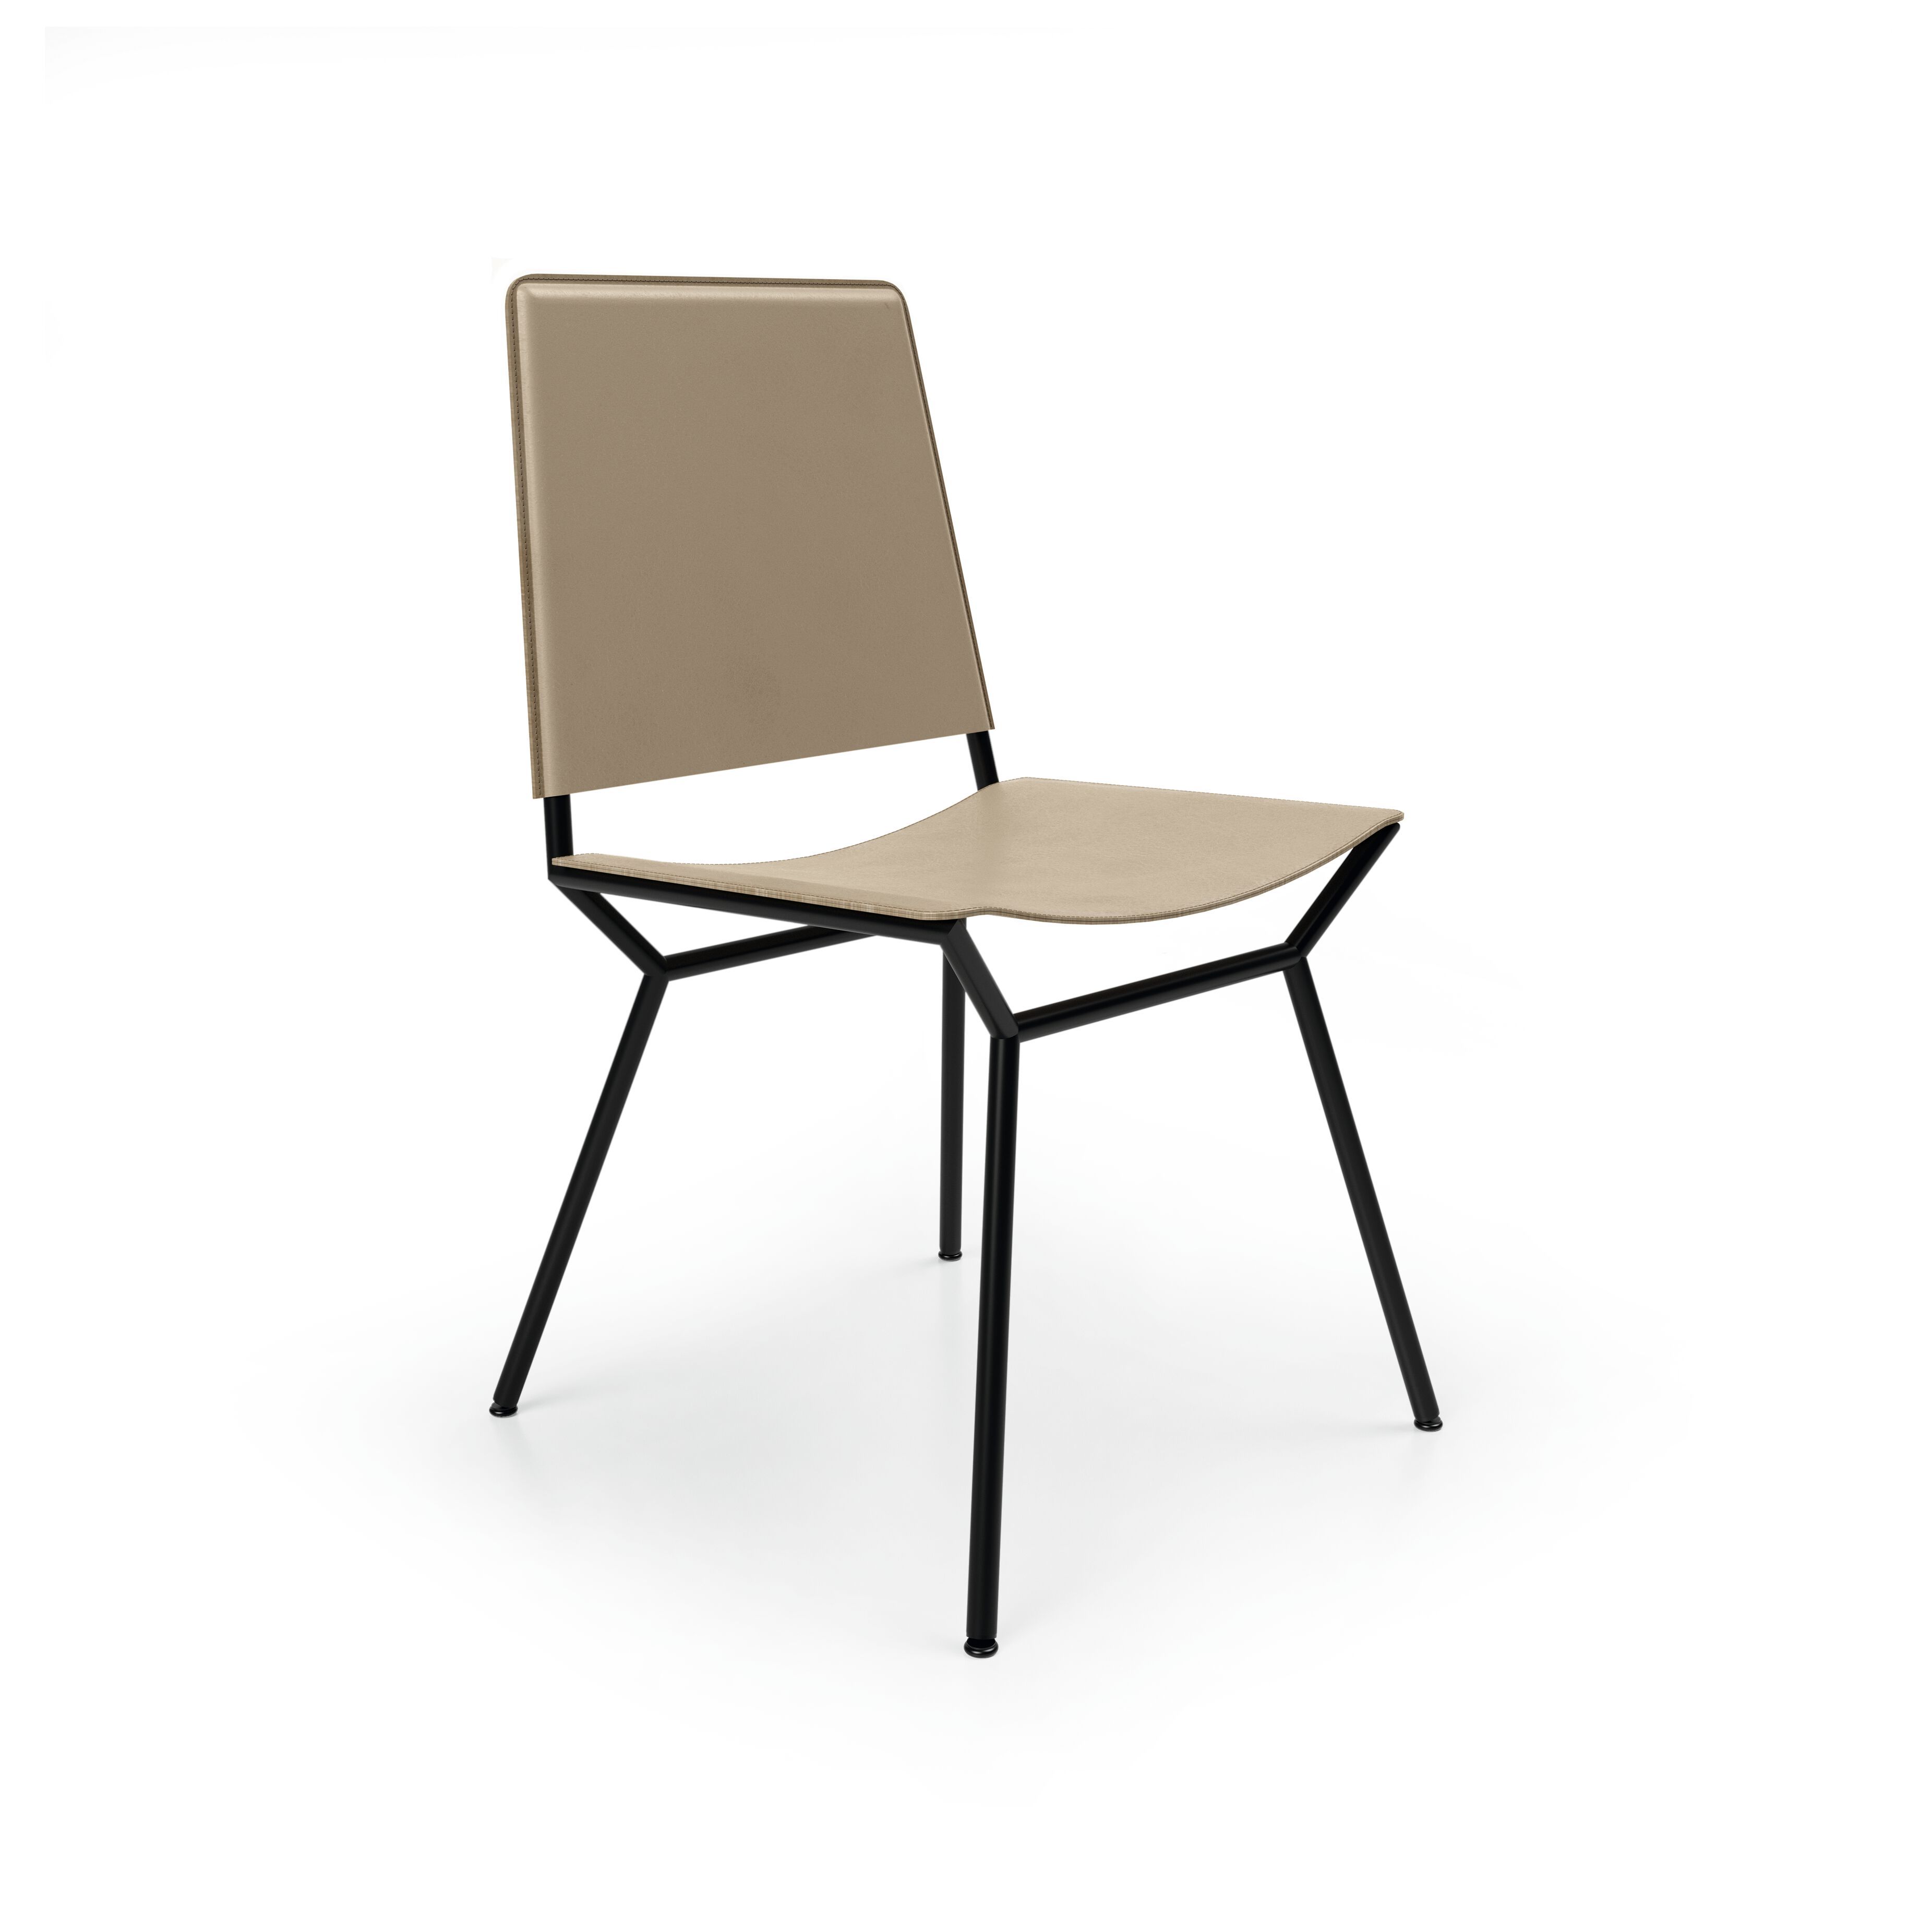 06_WK-Aisuu-Chair-0006.tif